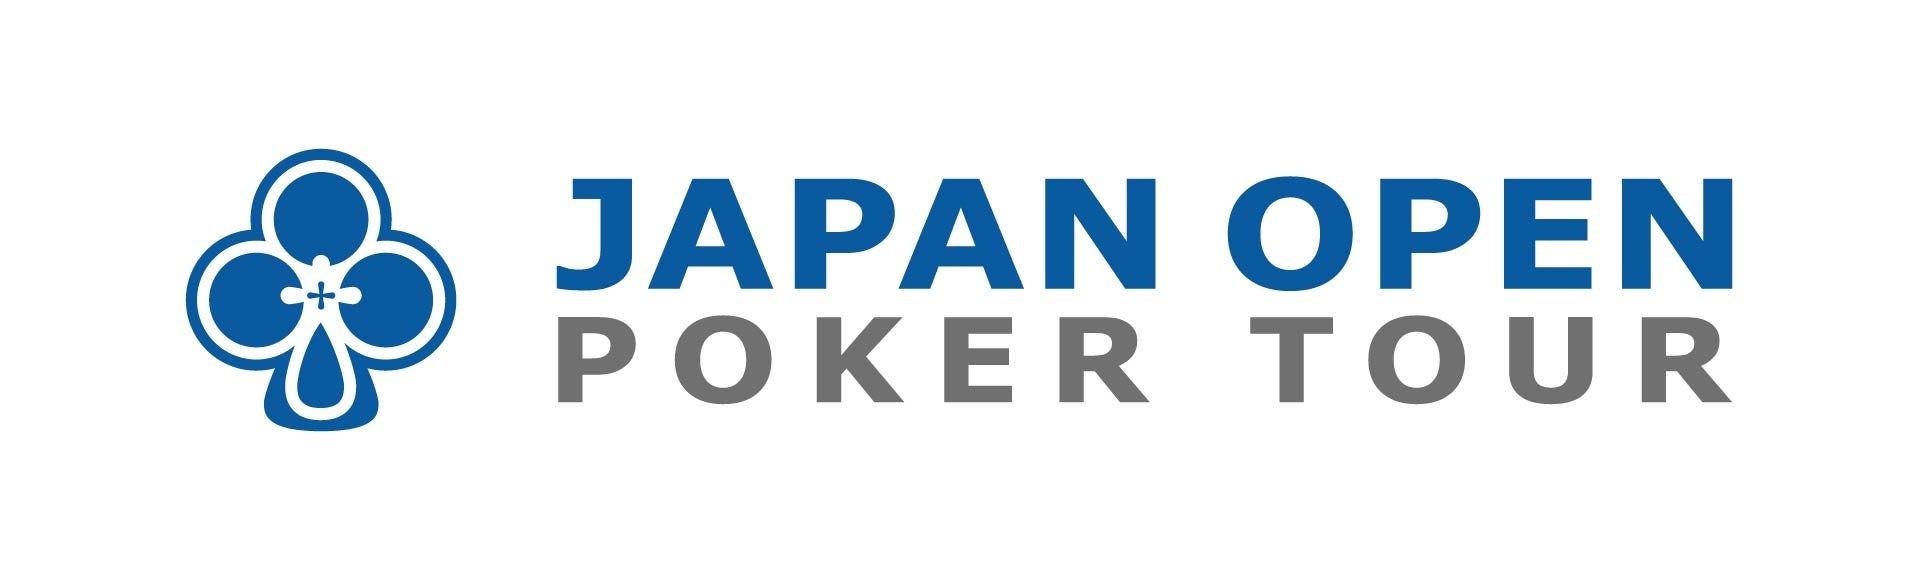 エンターテインメント業界ポーカーが『日本ポーカー連盟』及び国内最大規模の大会『Japan Open Poker Tour』とポーカーシーンの活性化とスポーツとしてのポーカーを普及する為業務連携を発表！のサブ画像2